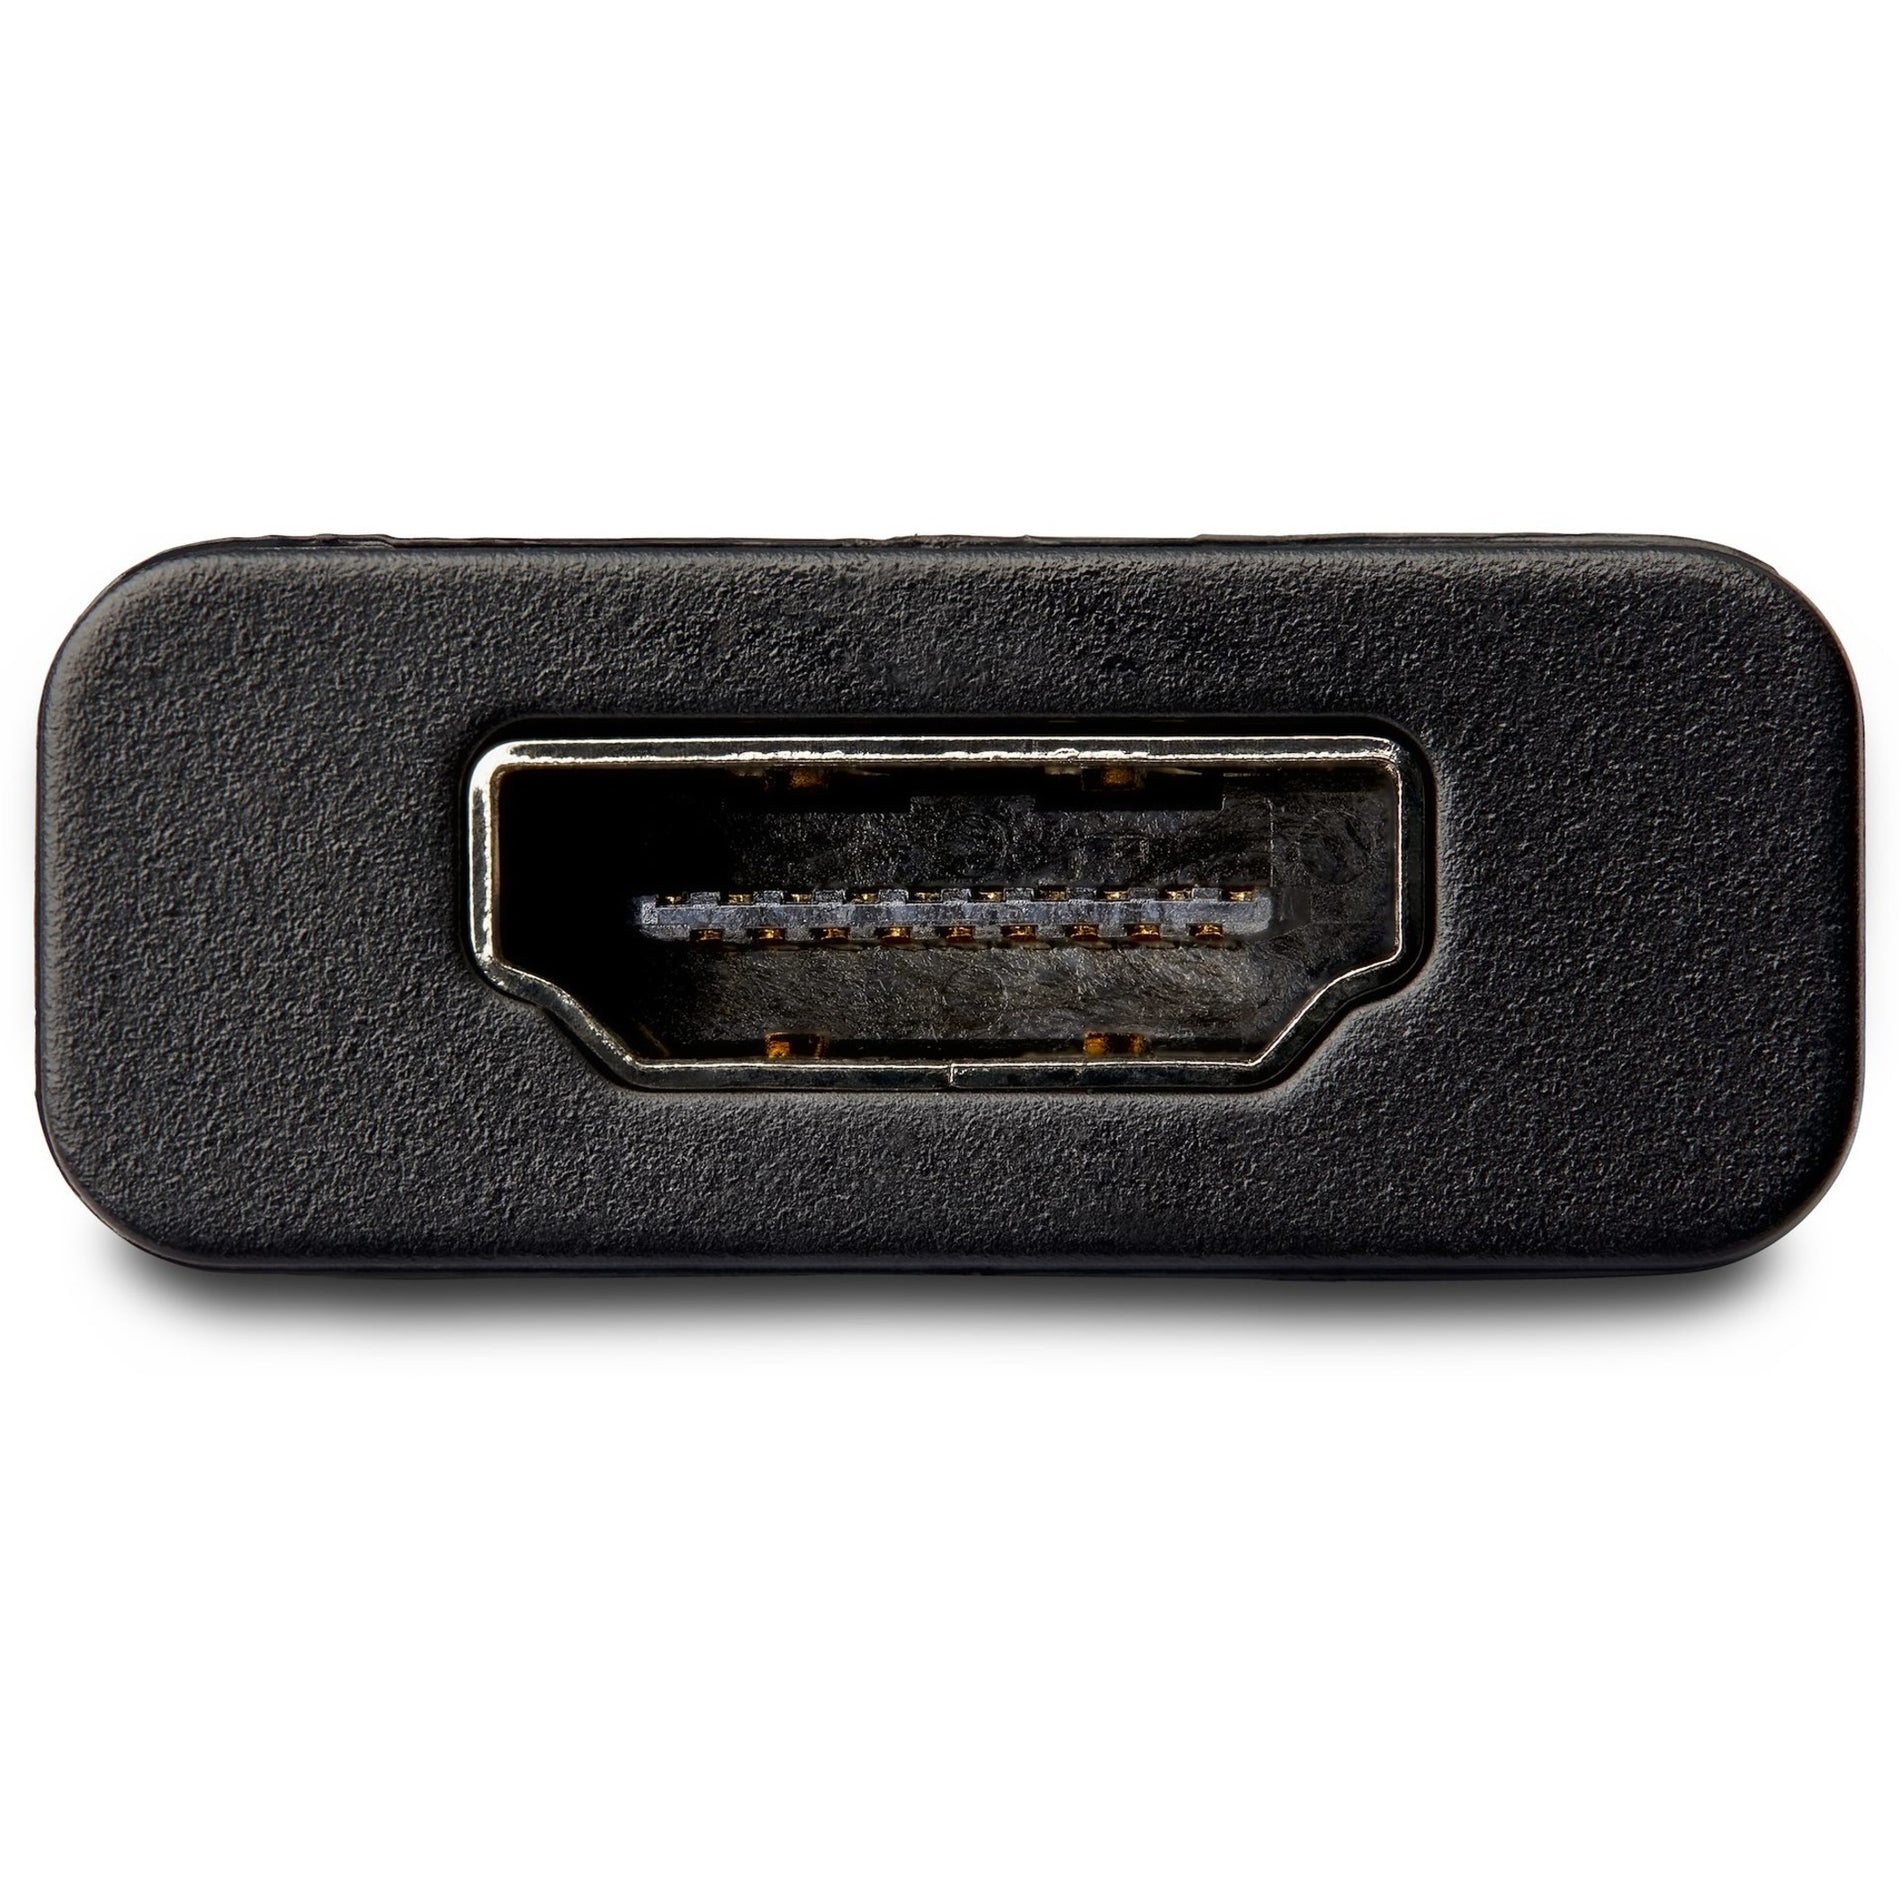 Adaptador de DisplayPort a HDMI StarTech.com DP2HD4K60H con HDR - 4K 60Hz Negro. Traduce StarTech.com como StarTech.com.